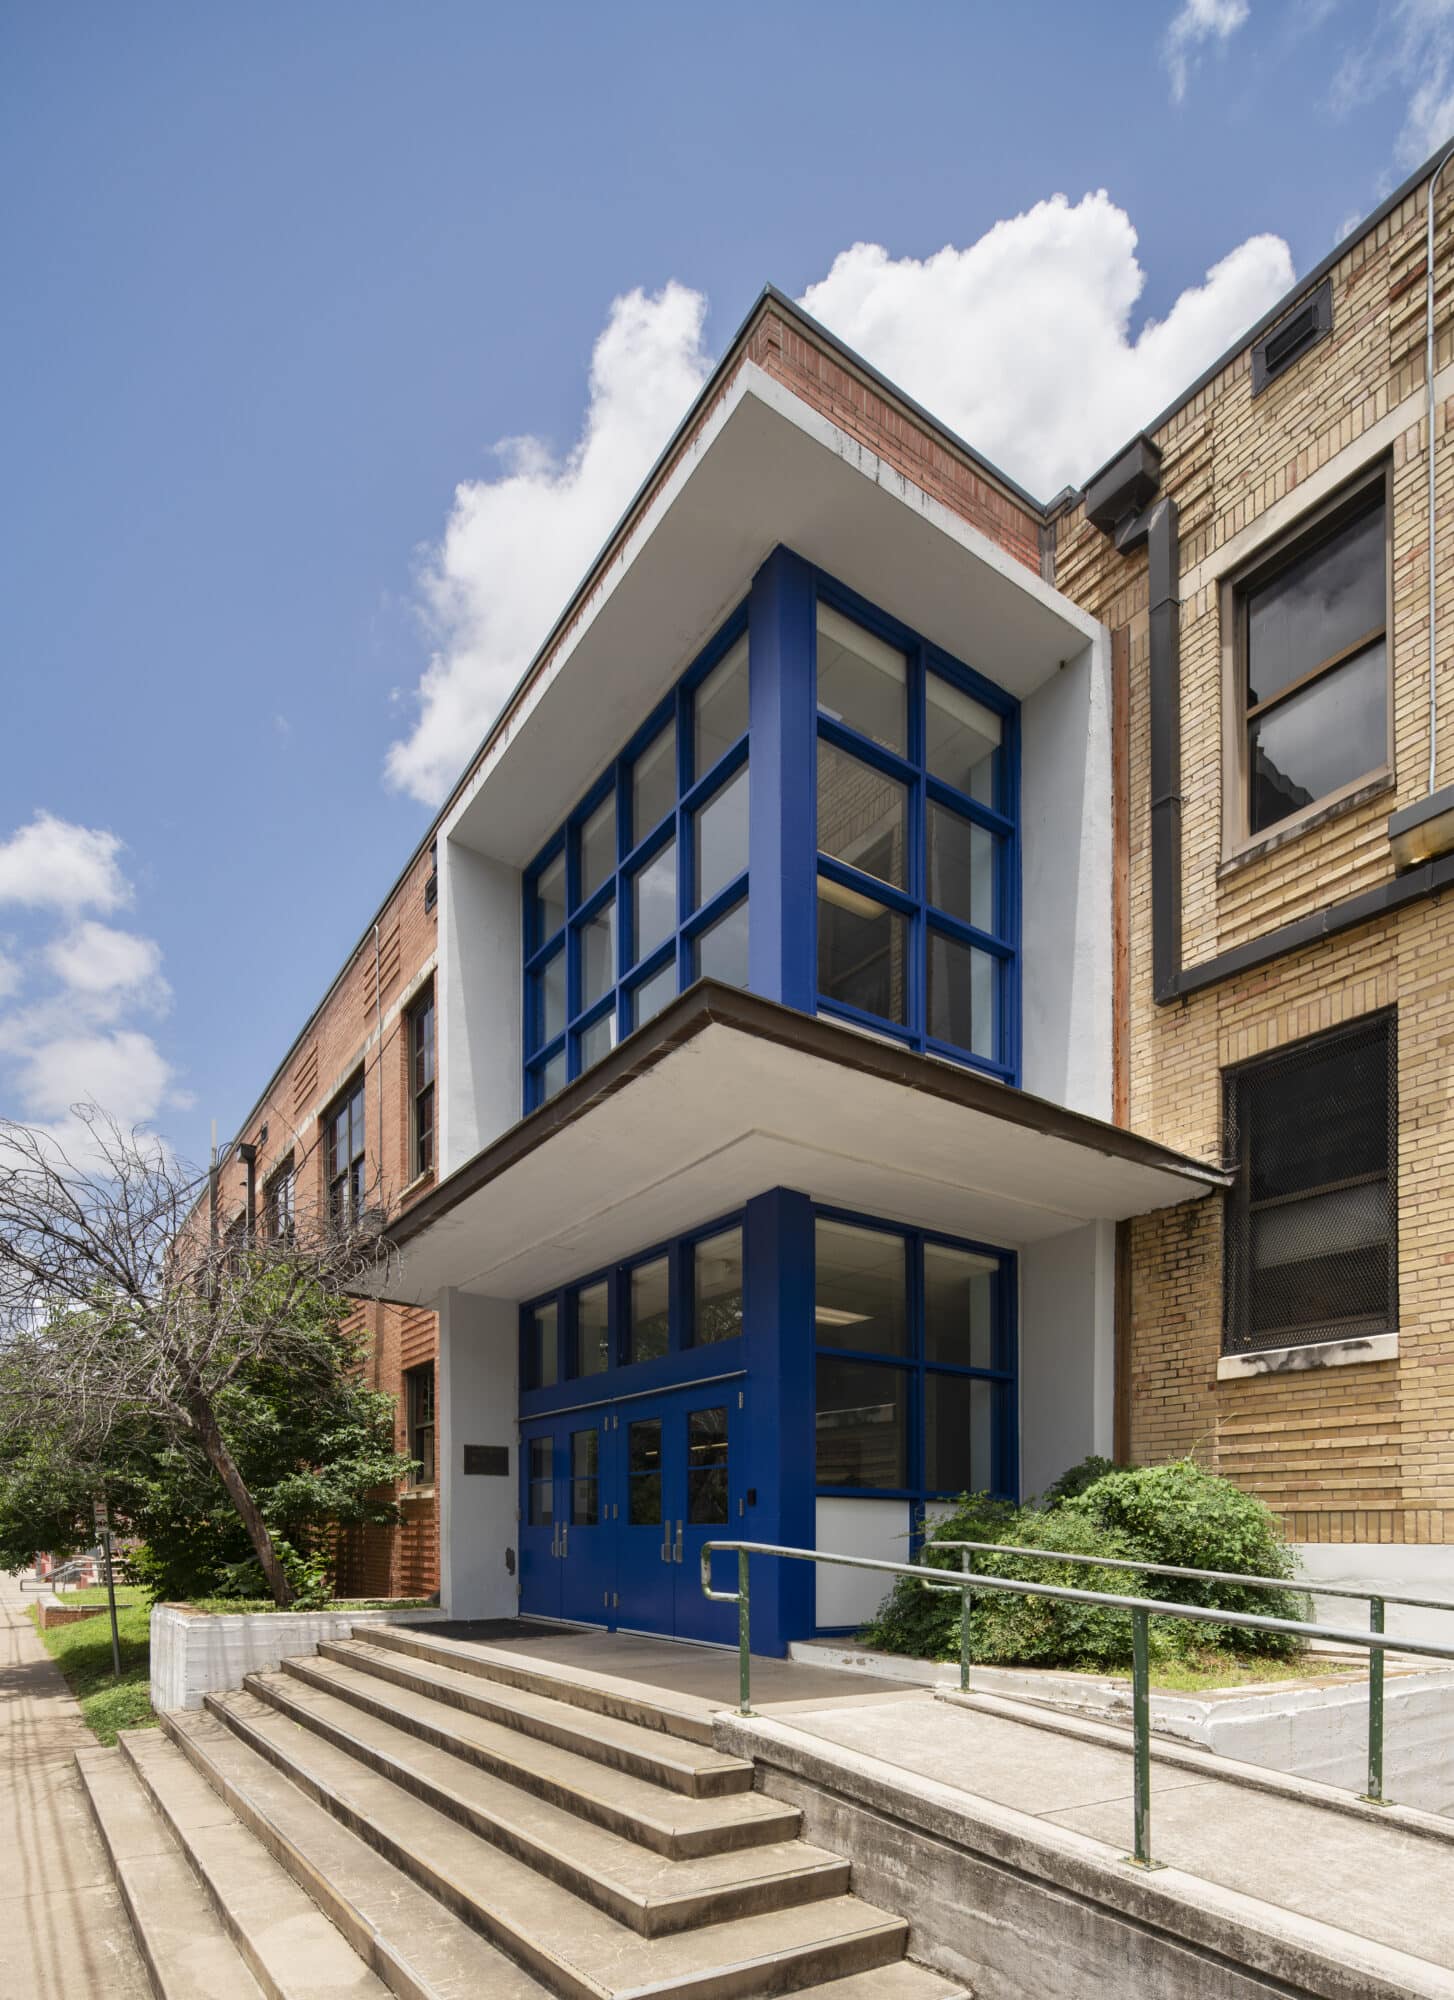 Modern blue entrance of urban school building.